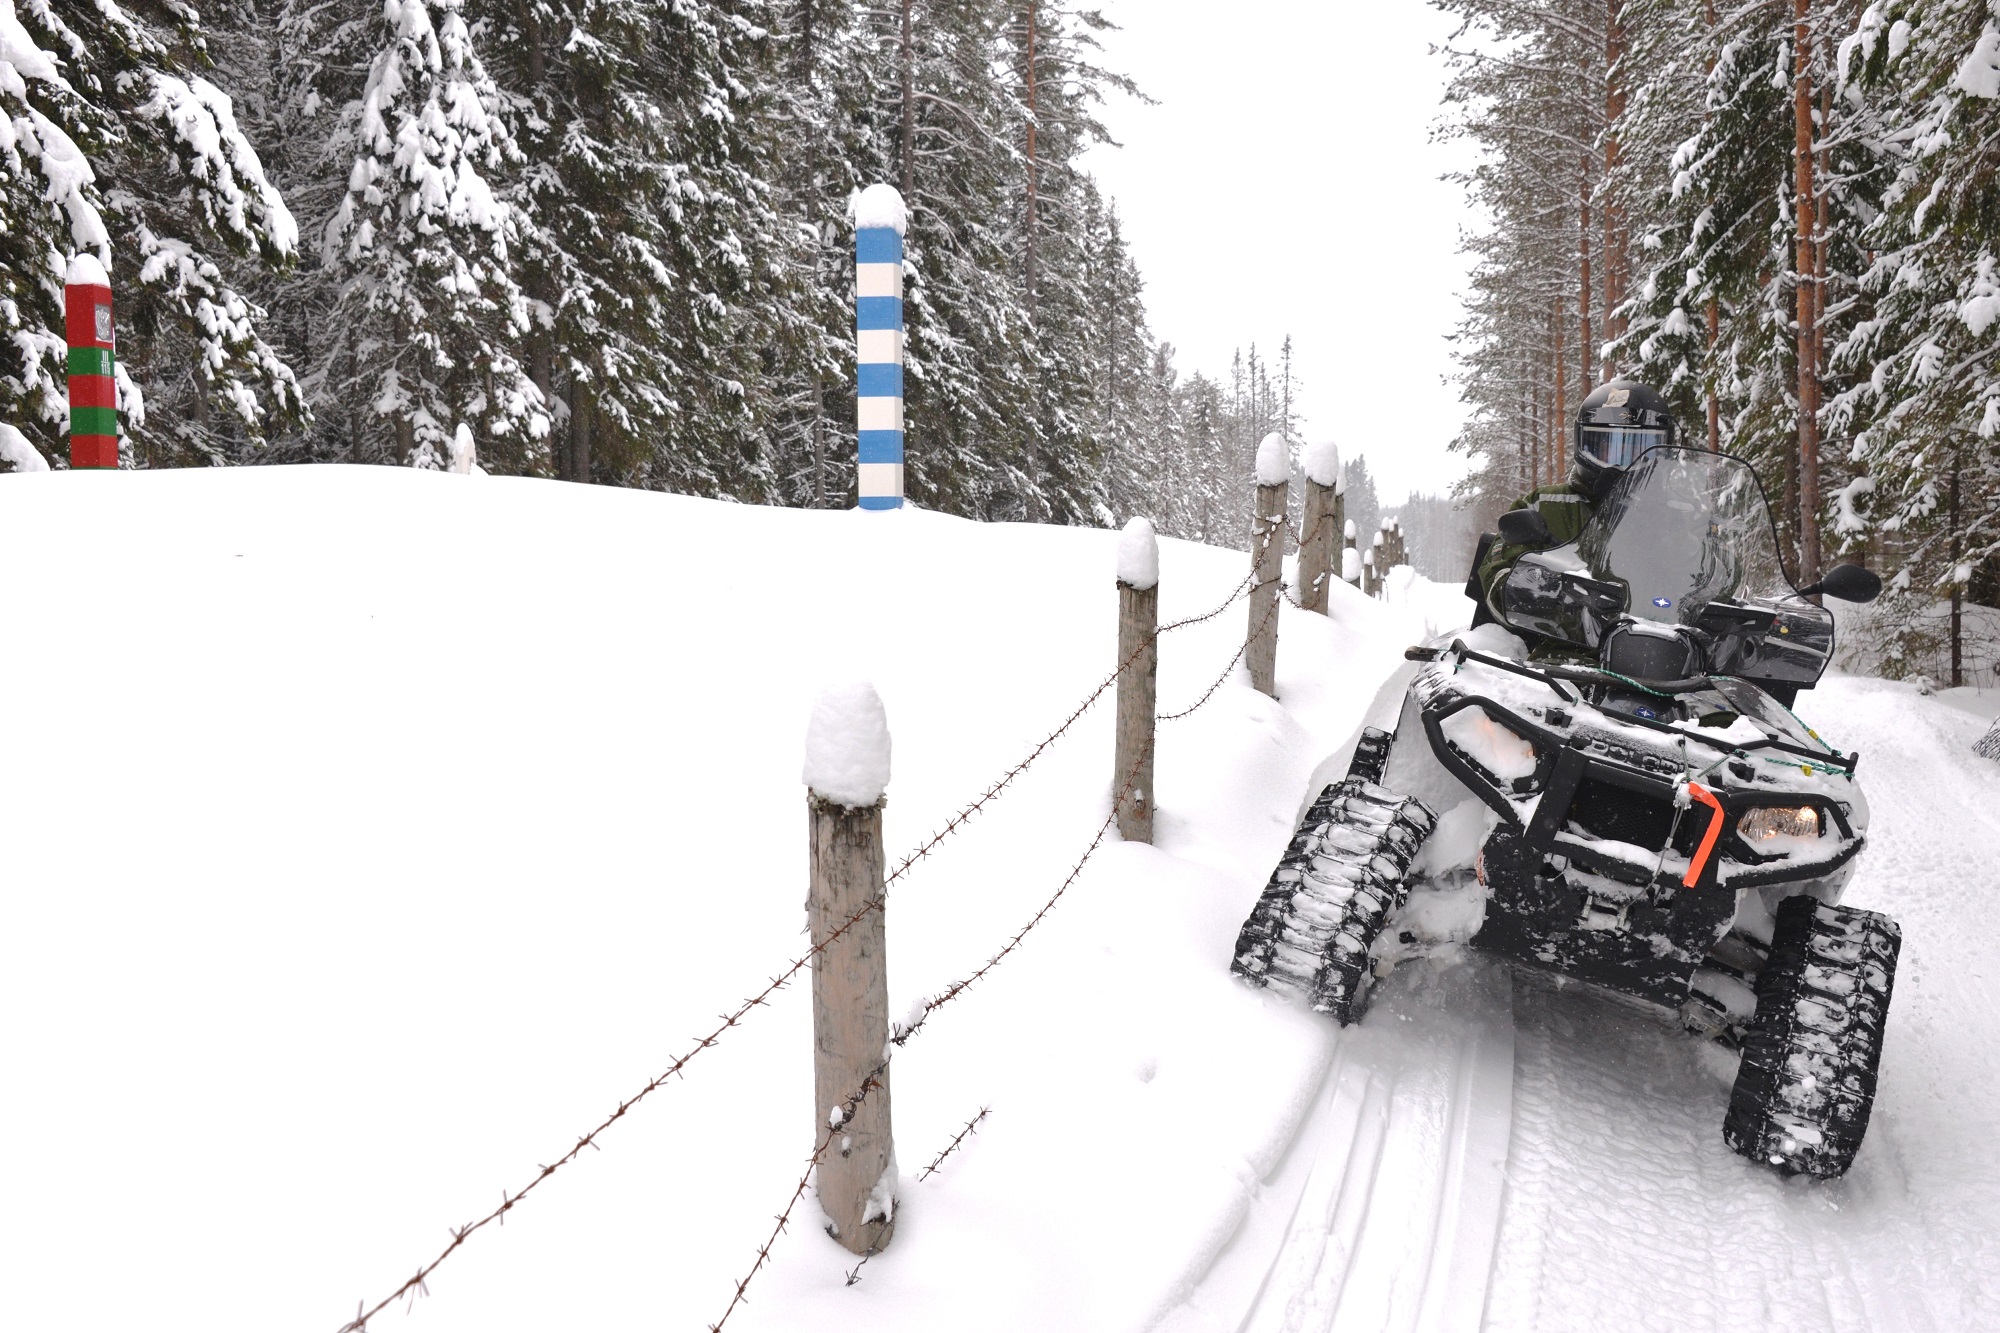 En traktorfyrhjuling med rullband i snön på patrulluppdrag i gränszonen.